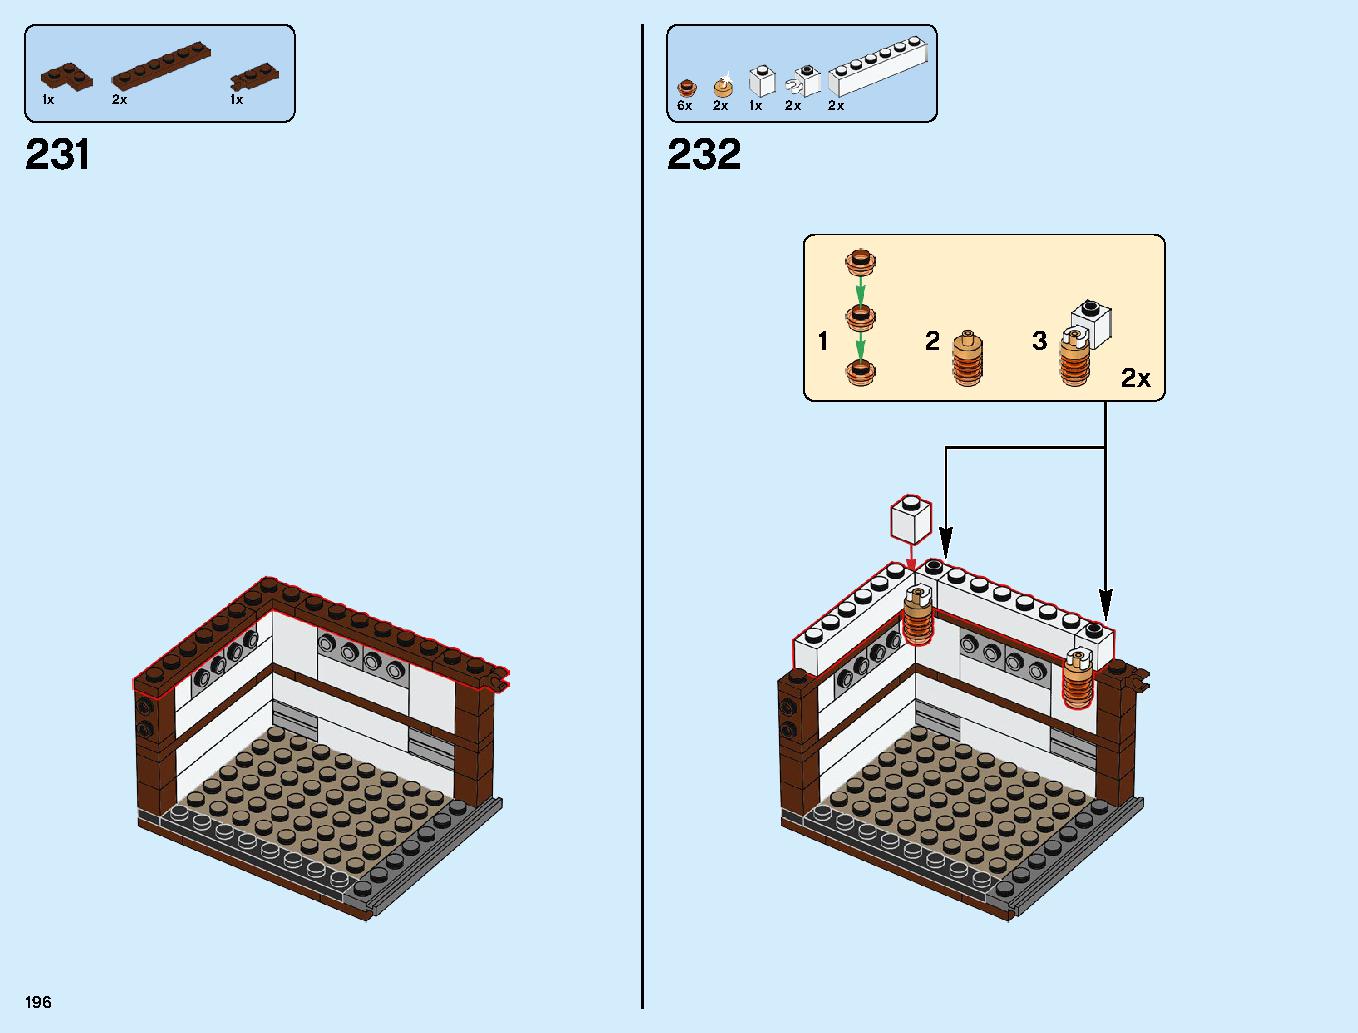 ニンジャゴーシティ・ポートパーク 70657 レゴの商品情報 レゴの説明書・組立方法 196 page